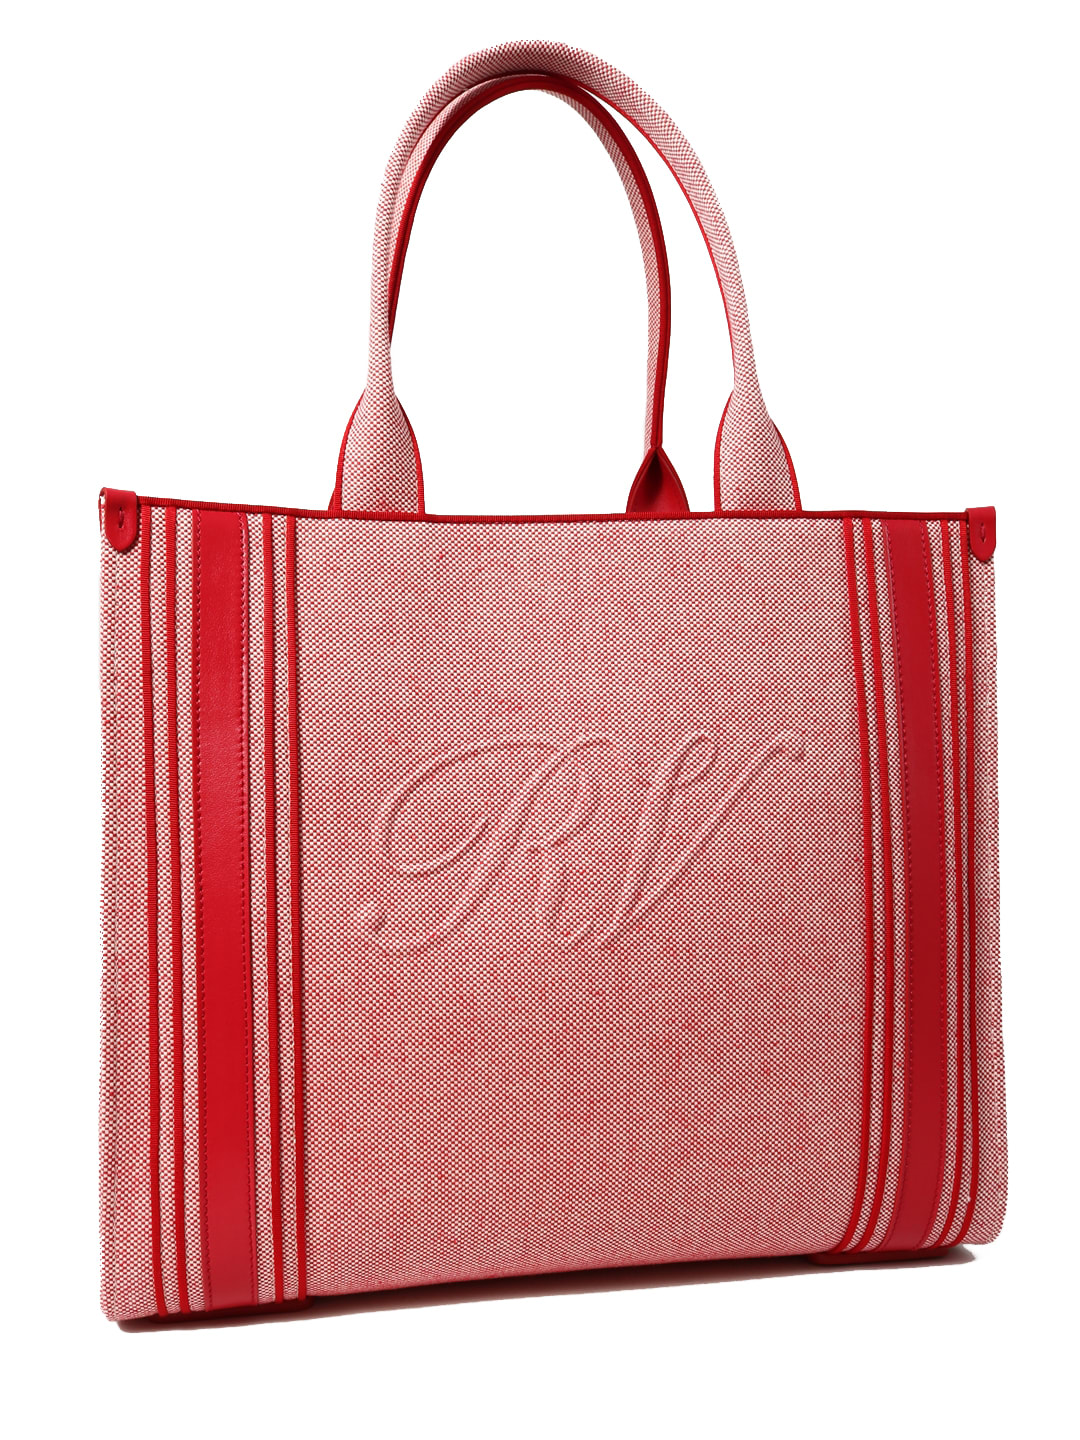 Roger Vivier Shopping Bag Call Me Viv In Pink | ModeSens